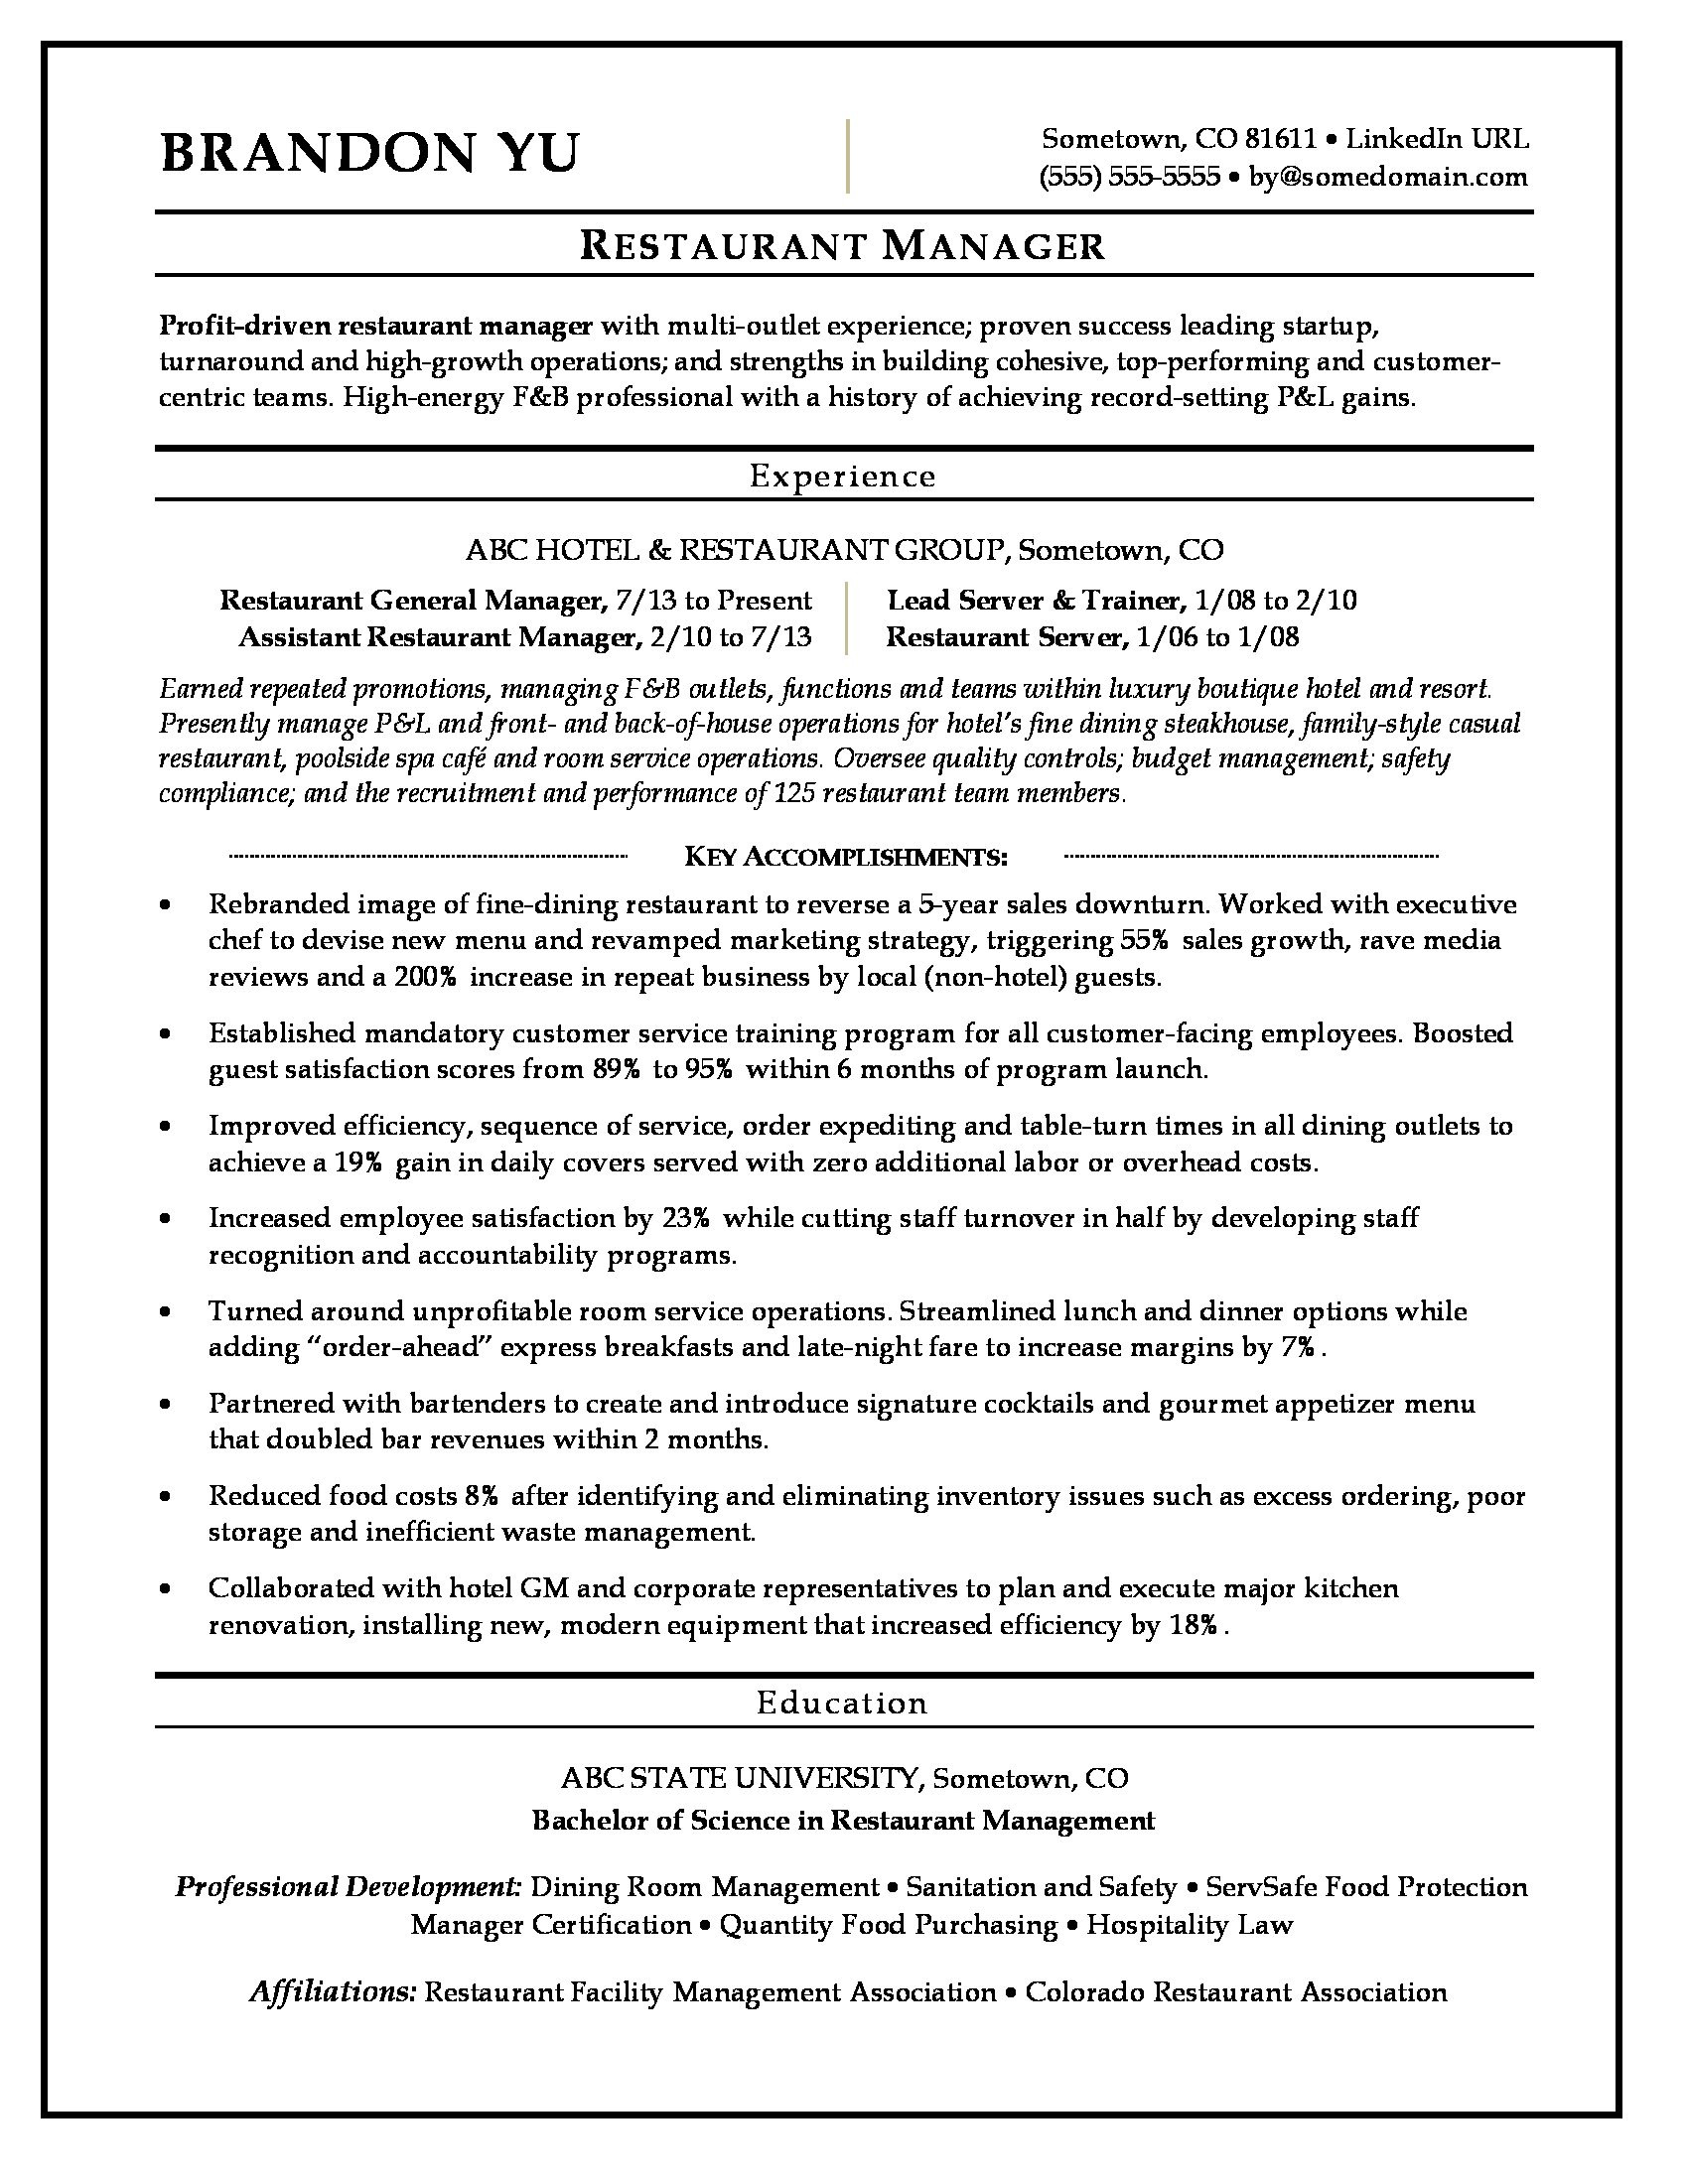 Sample Resume Objective Statement for Food Service Restaurant Manager Resume Monster.com